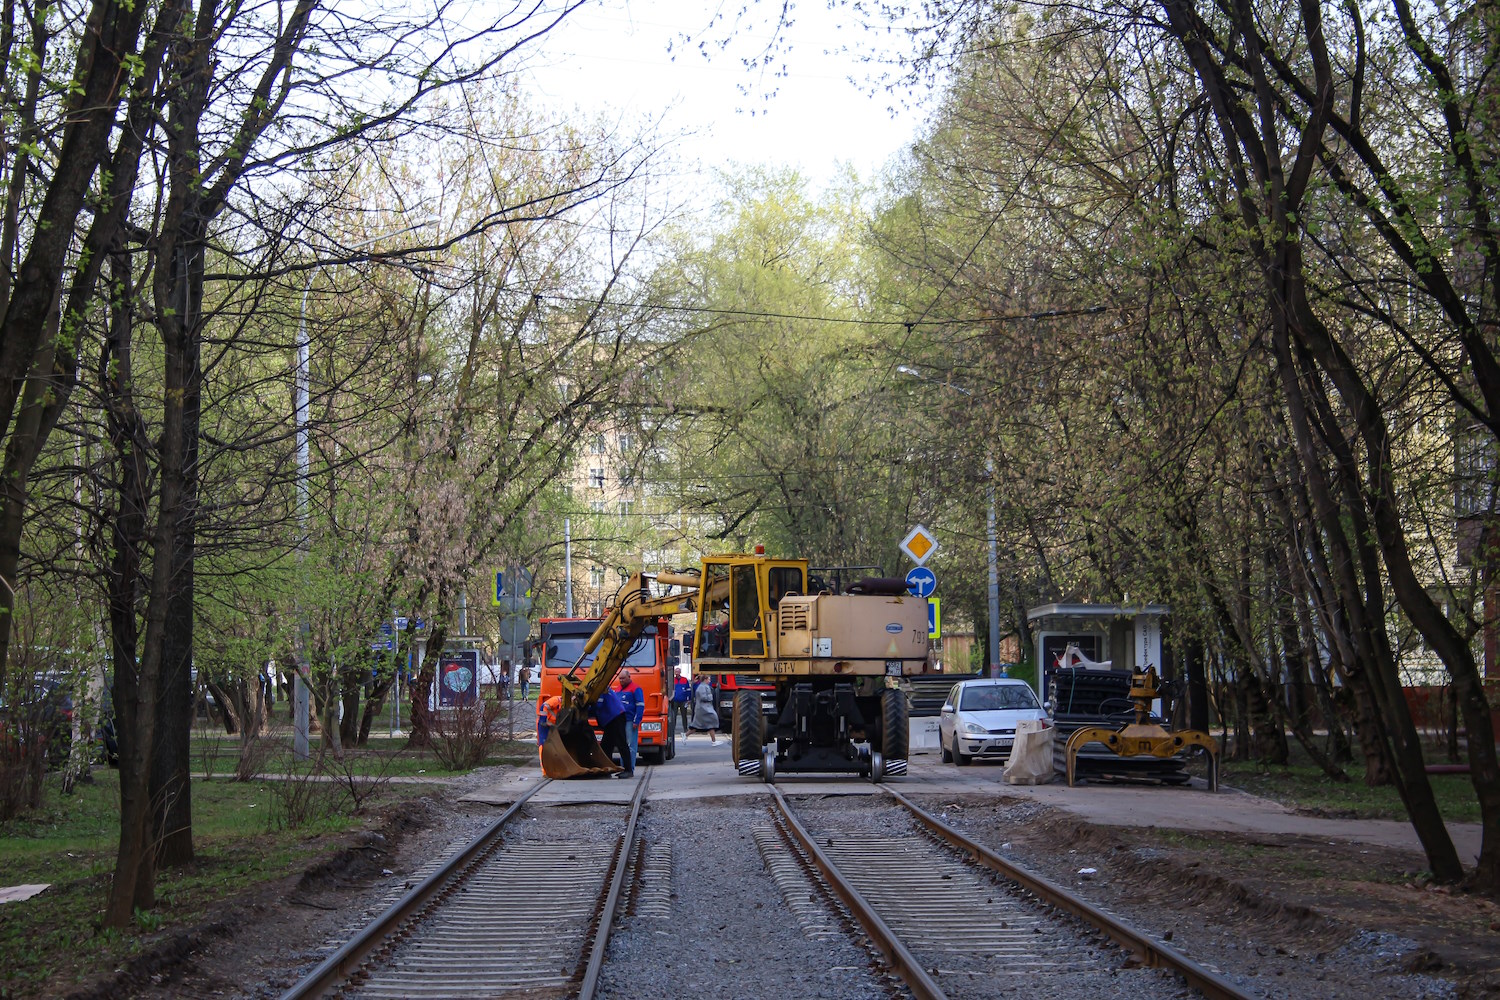 莫斯科 — Construction and repairs; 莫斯科 — Tram lines: Northern Administrative District